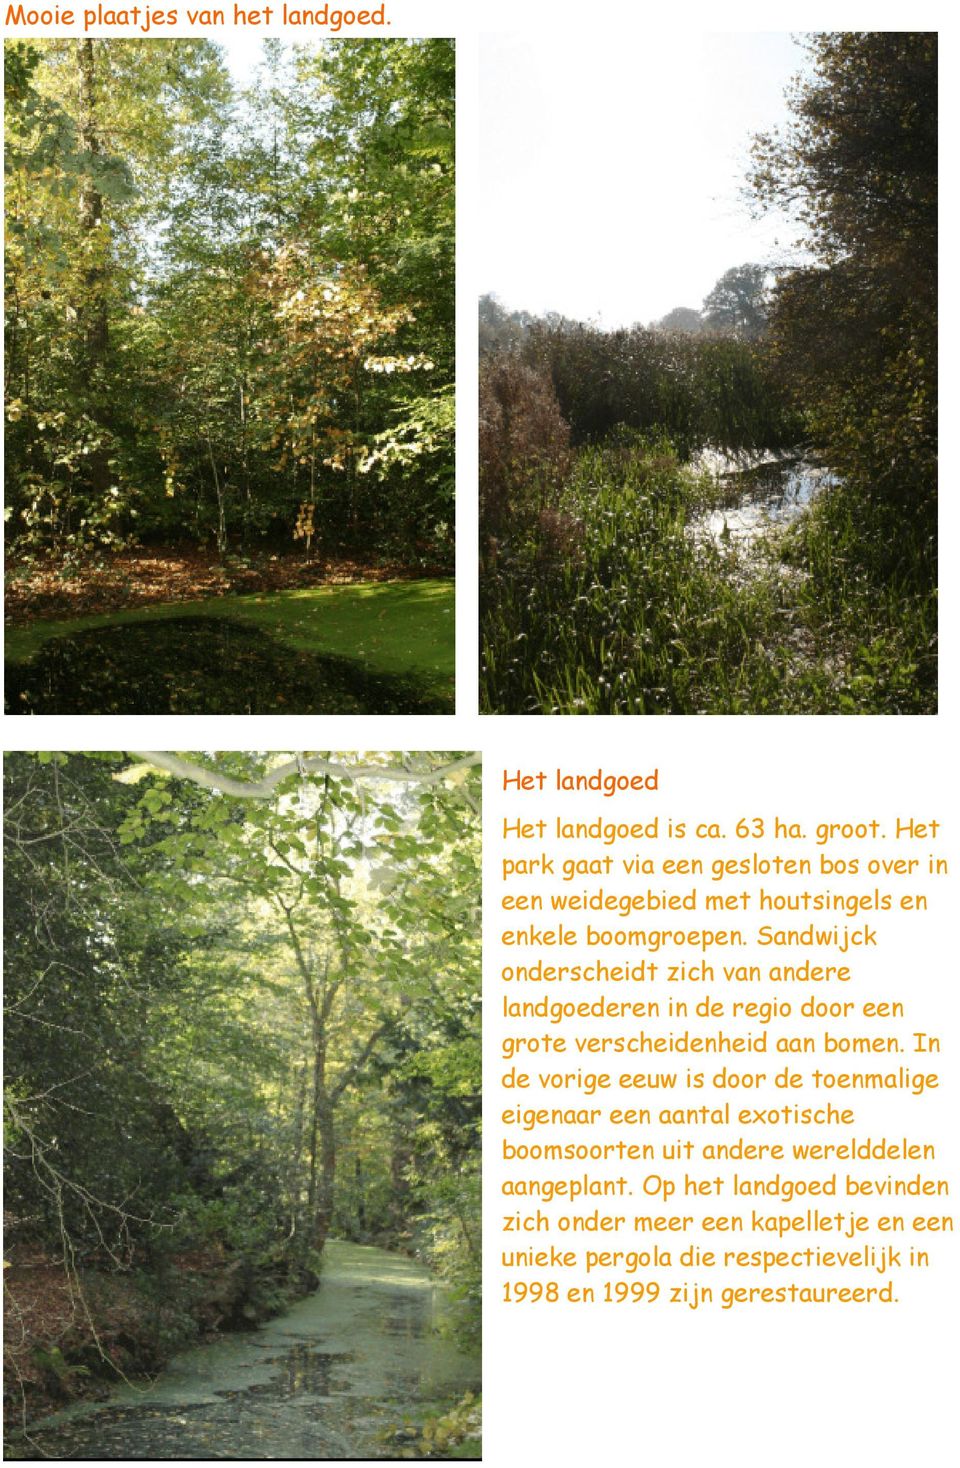 Sandwijck onderscheidt zich van andere landgoederen in de regio door een grote verscheidenheid aan bomen.